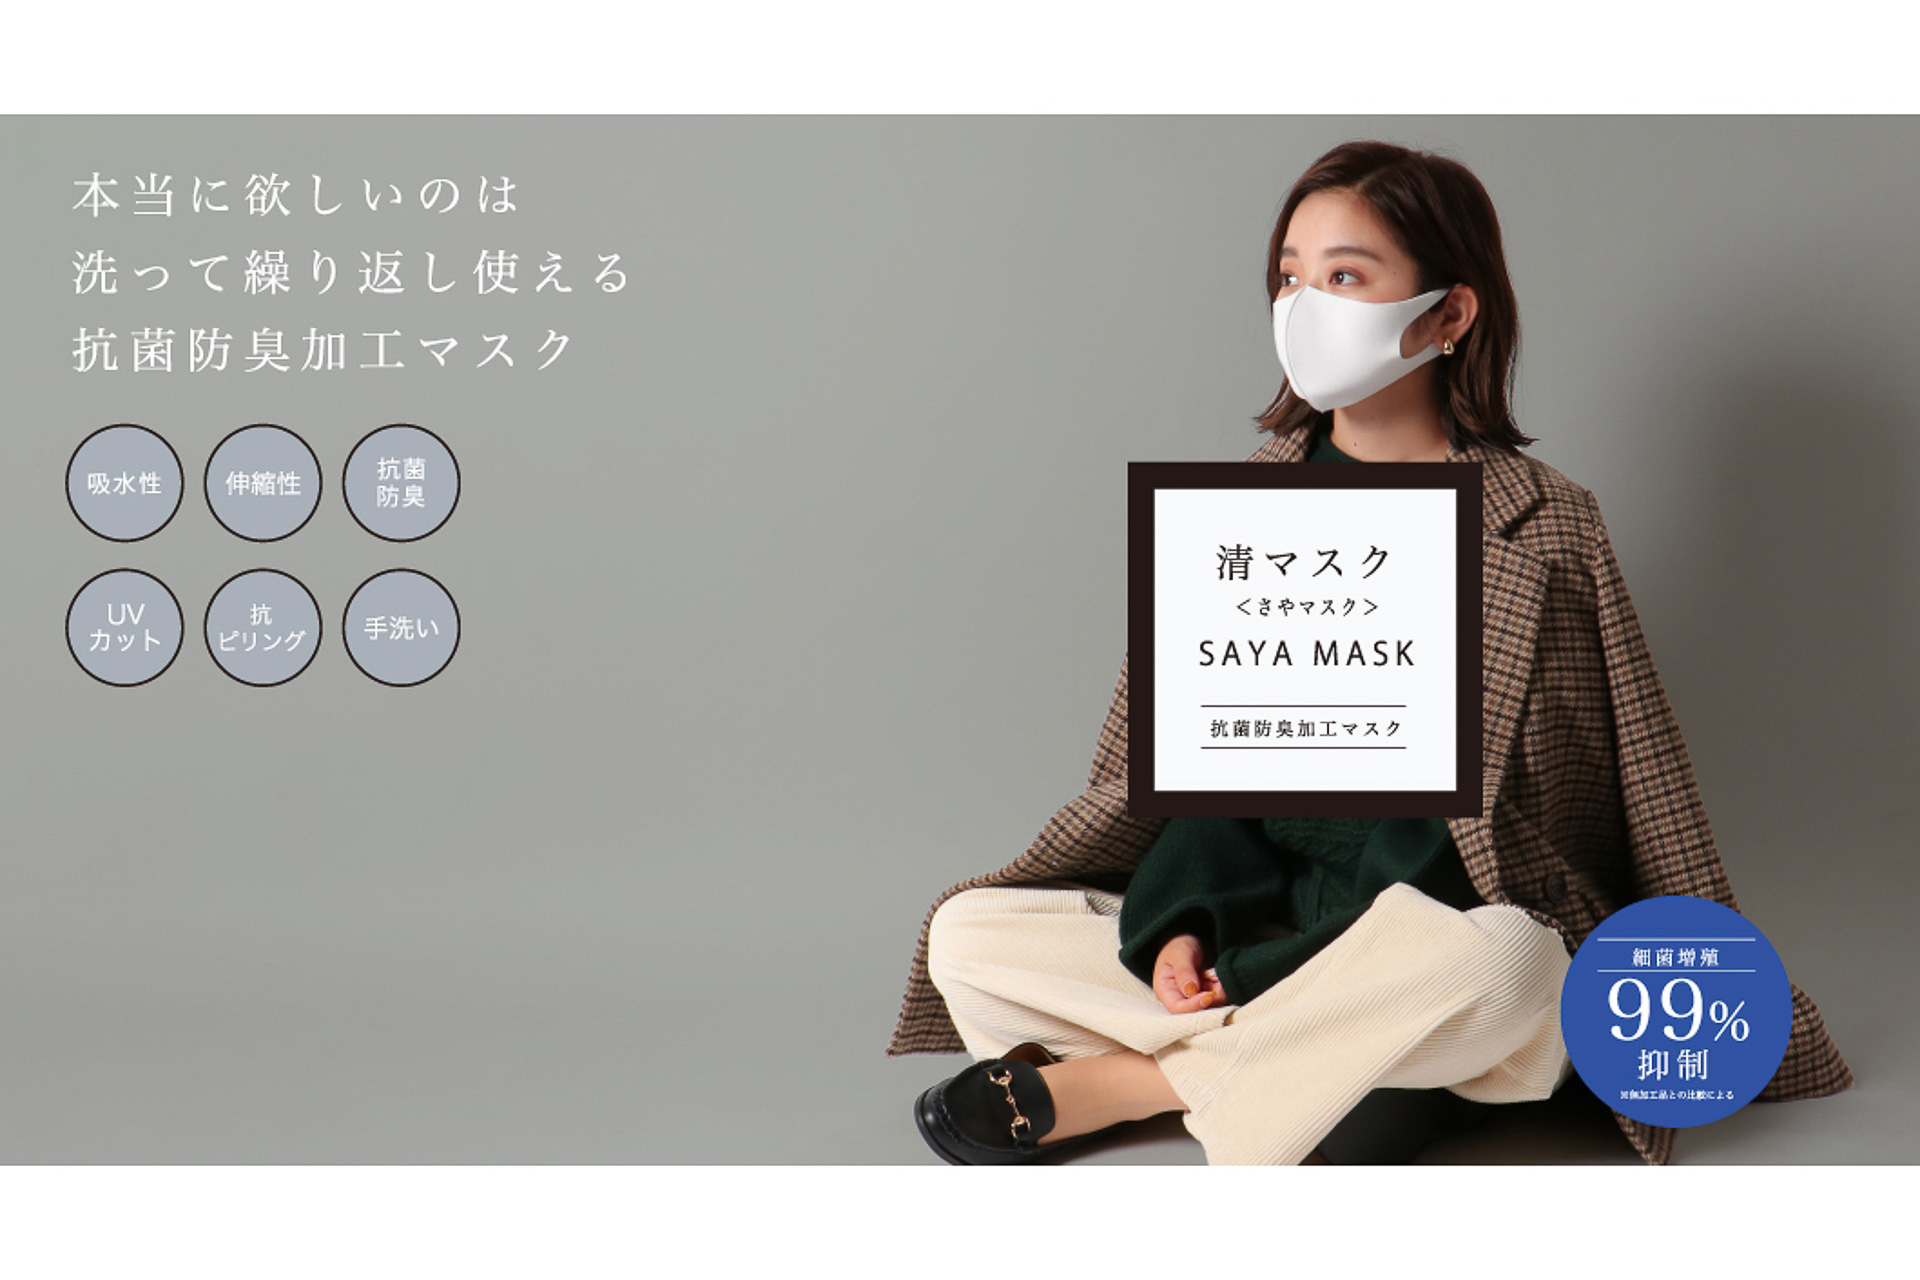 イオン 細菌増殖を99 抑制する 清 さや マスク 発売 マスク専門店 Mask Com で先行販売 トラベル Watch